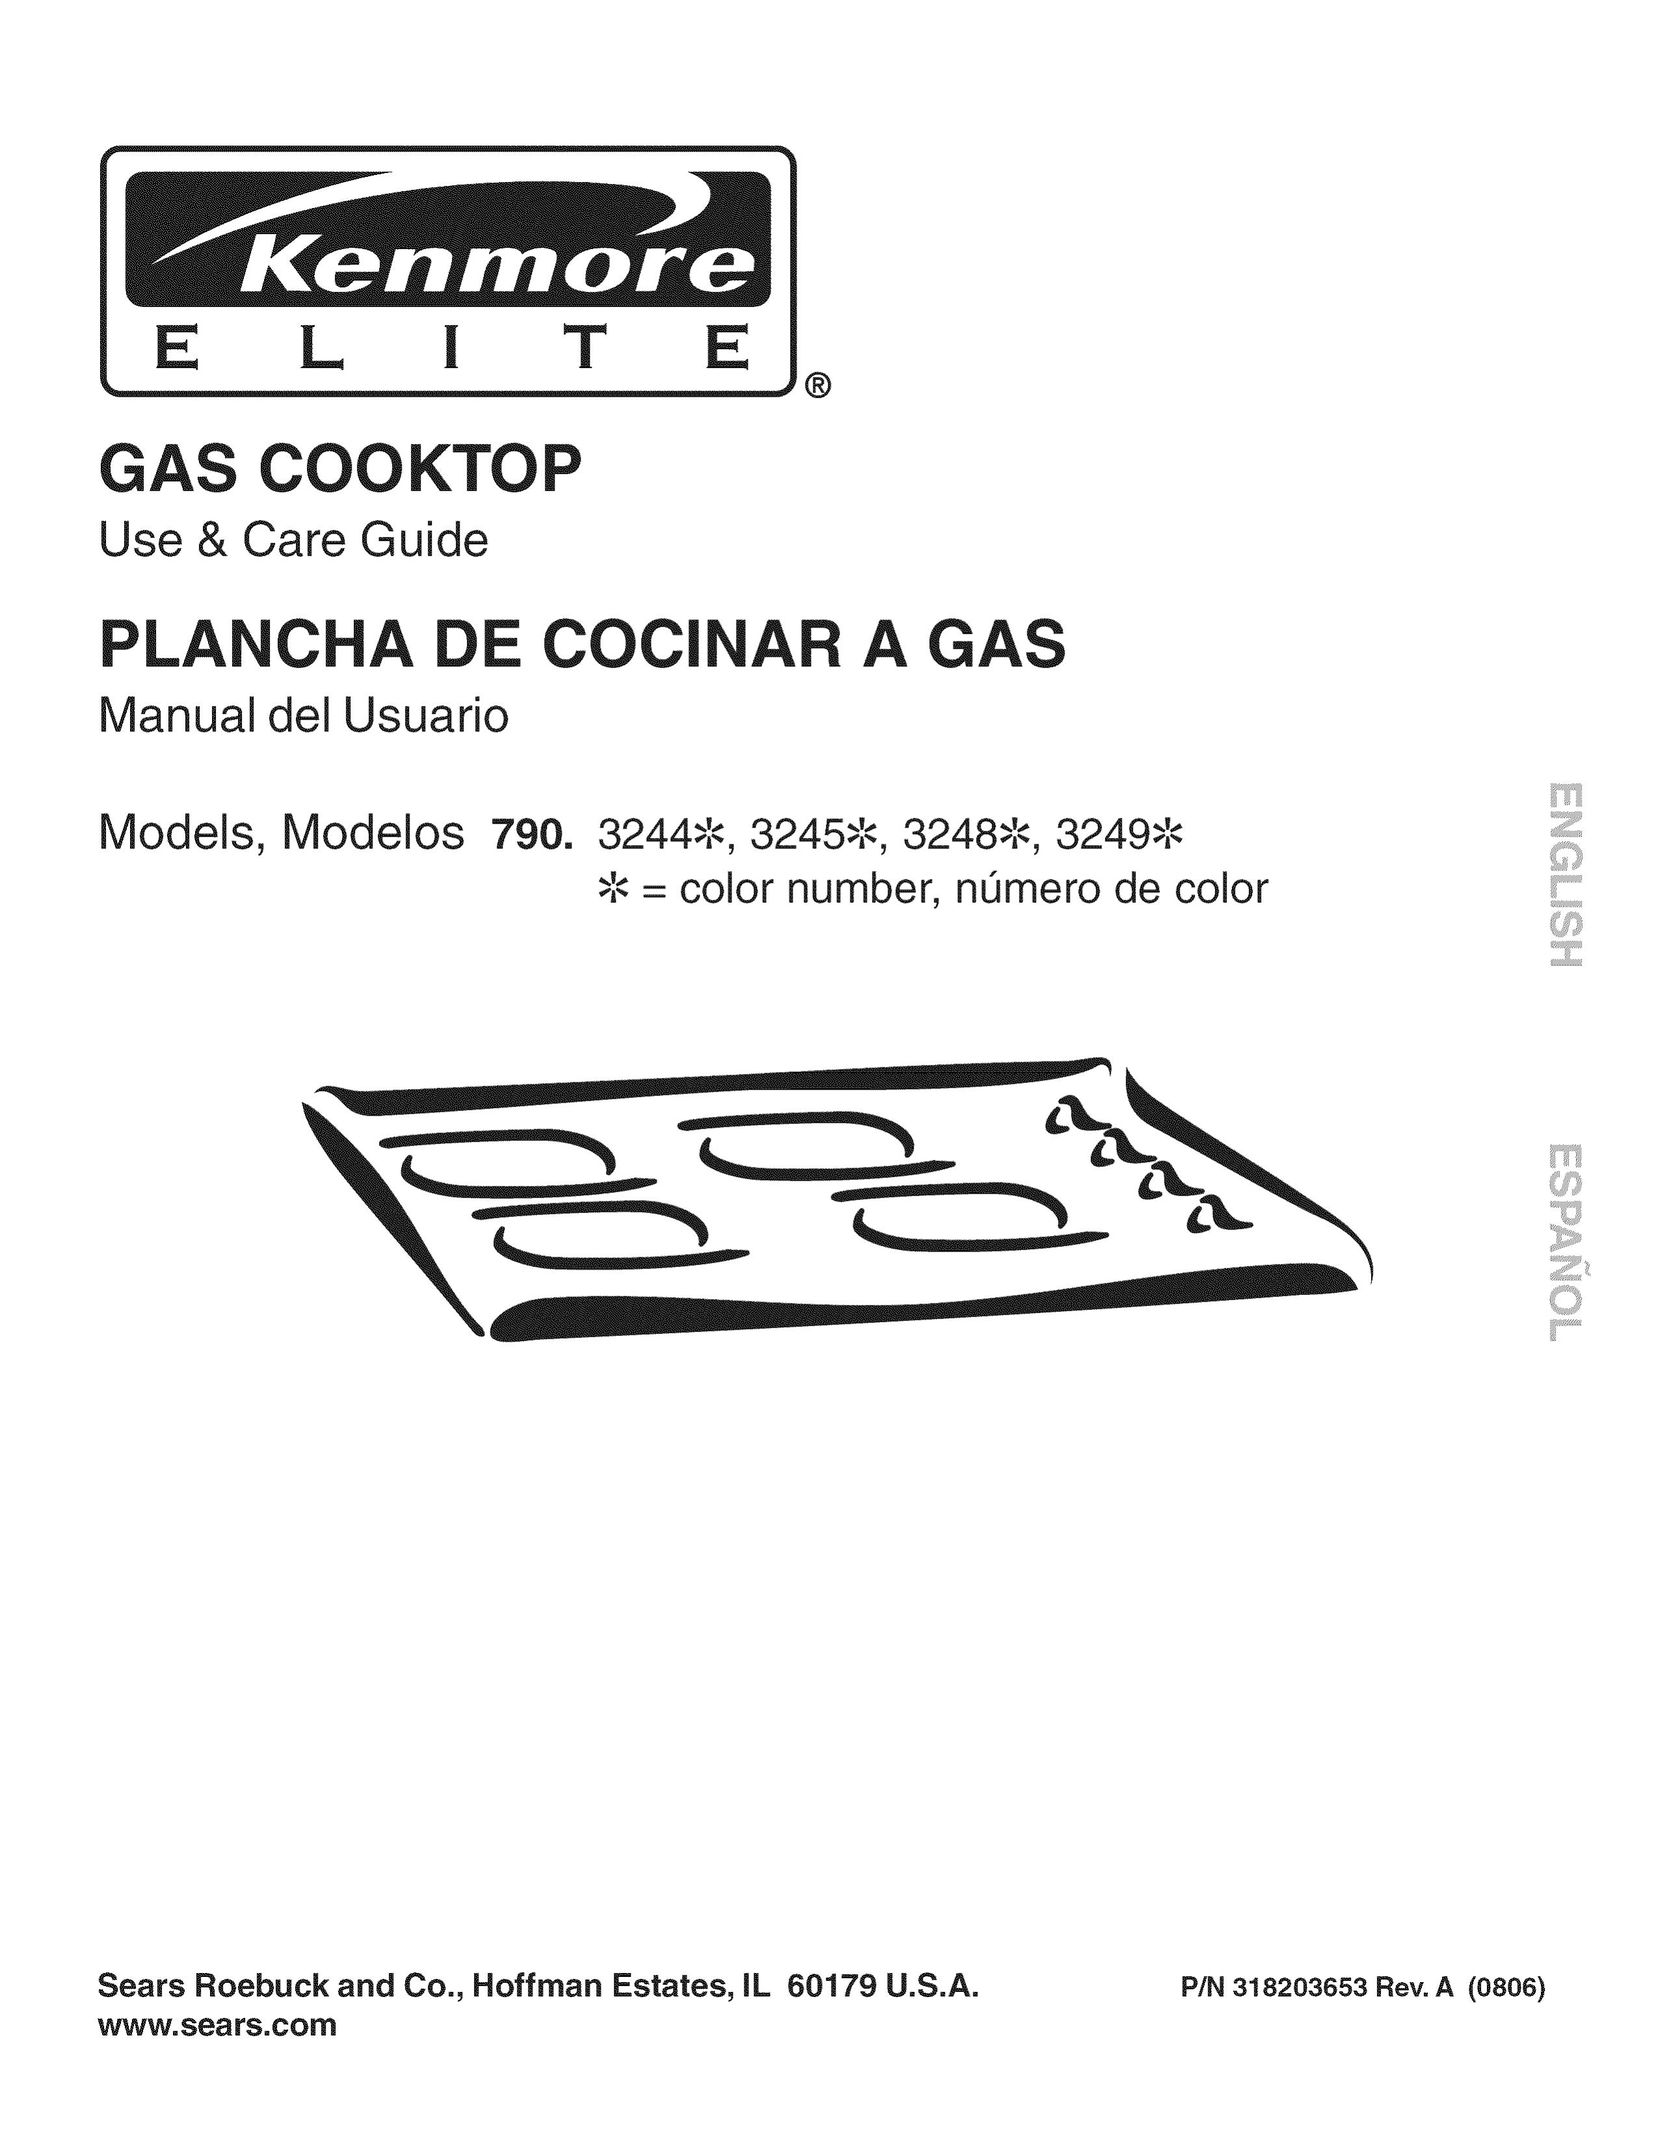 Kenmore 790.3249 Cooktop User Manual